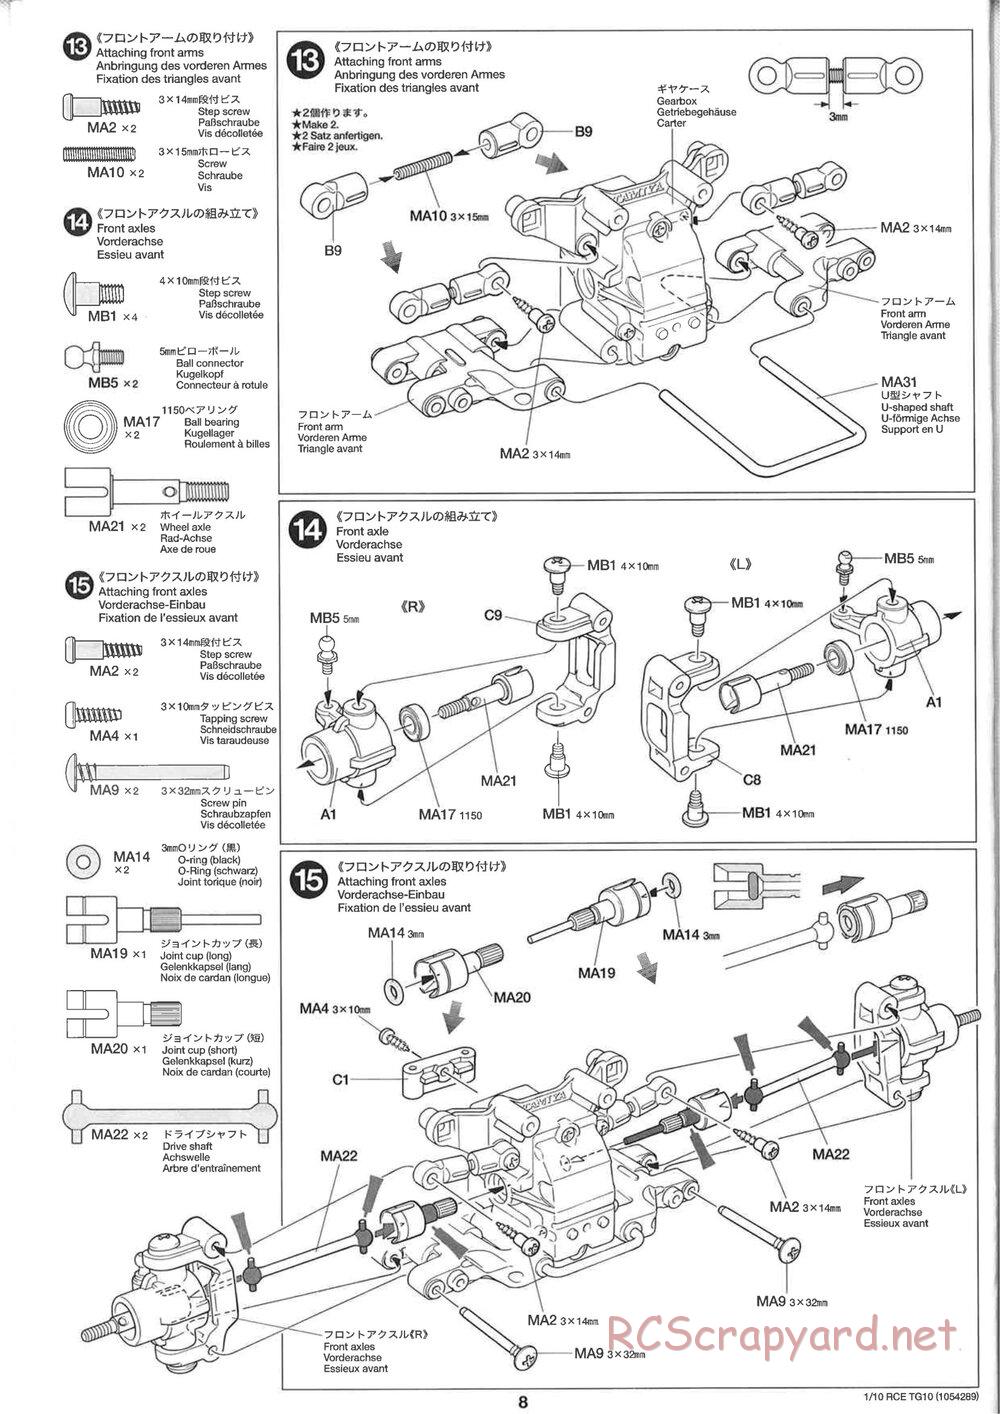 Tamiya - TG10 Mk.1 Chassis - Manual - Page 8